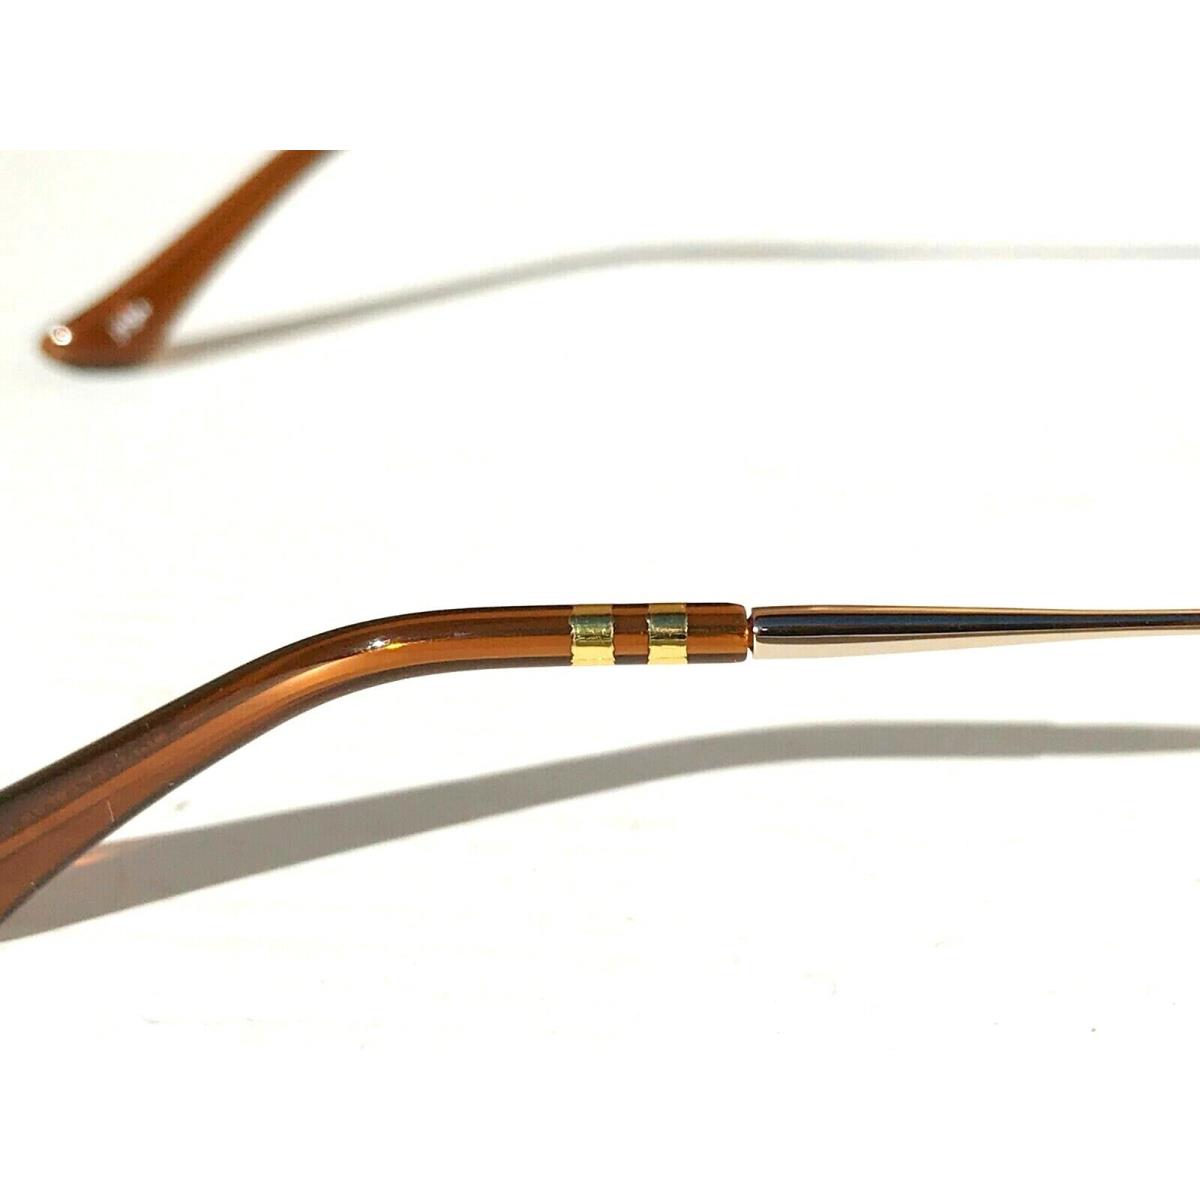 Revo sunglasses SALLY HERSHBERGER - Gold Frame, Rose Golf Lens